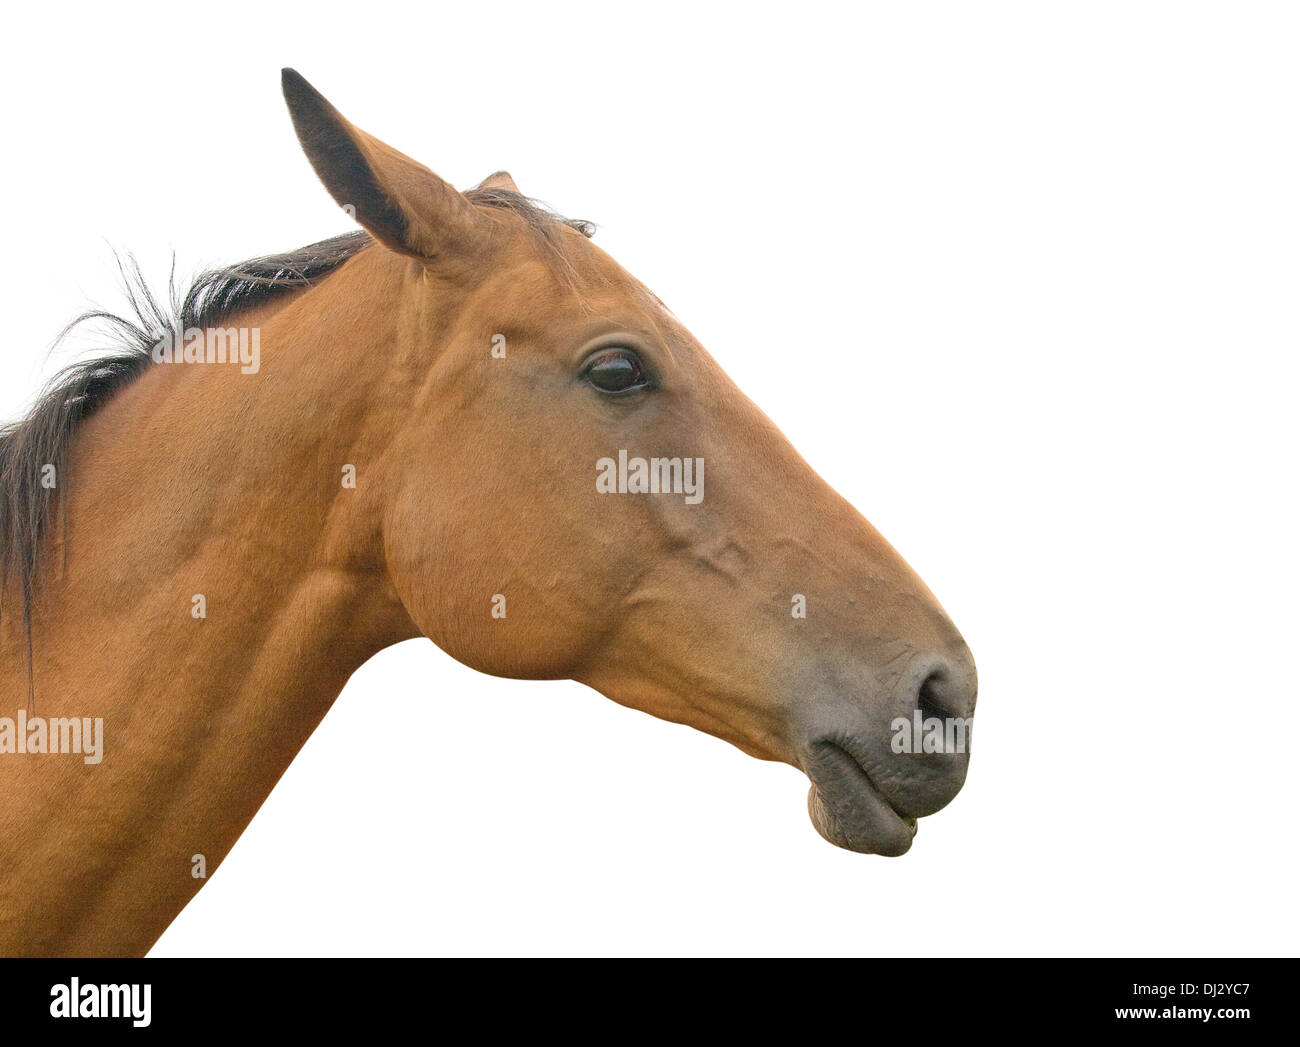 Profilo di un cavallo della testa e del collo, isolati su sfondo bianco Foto Stock